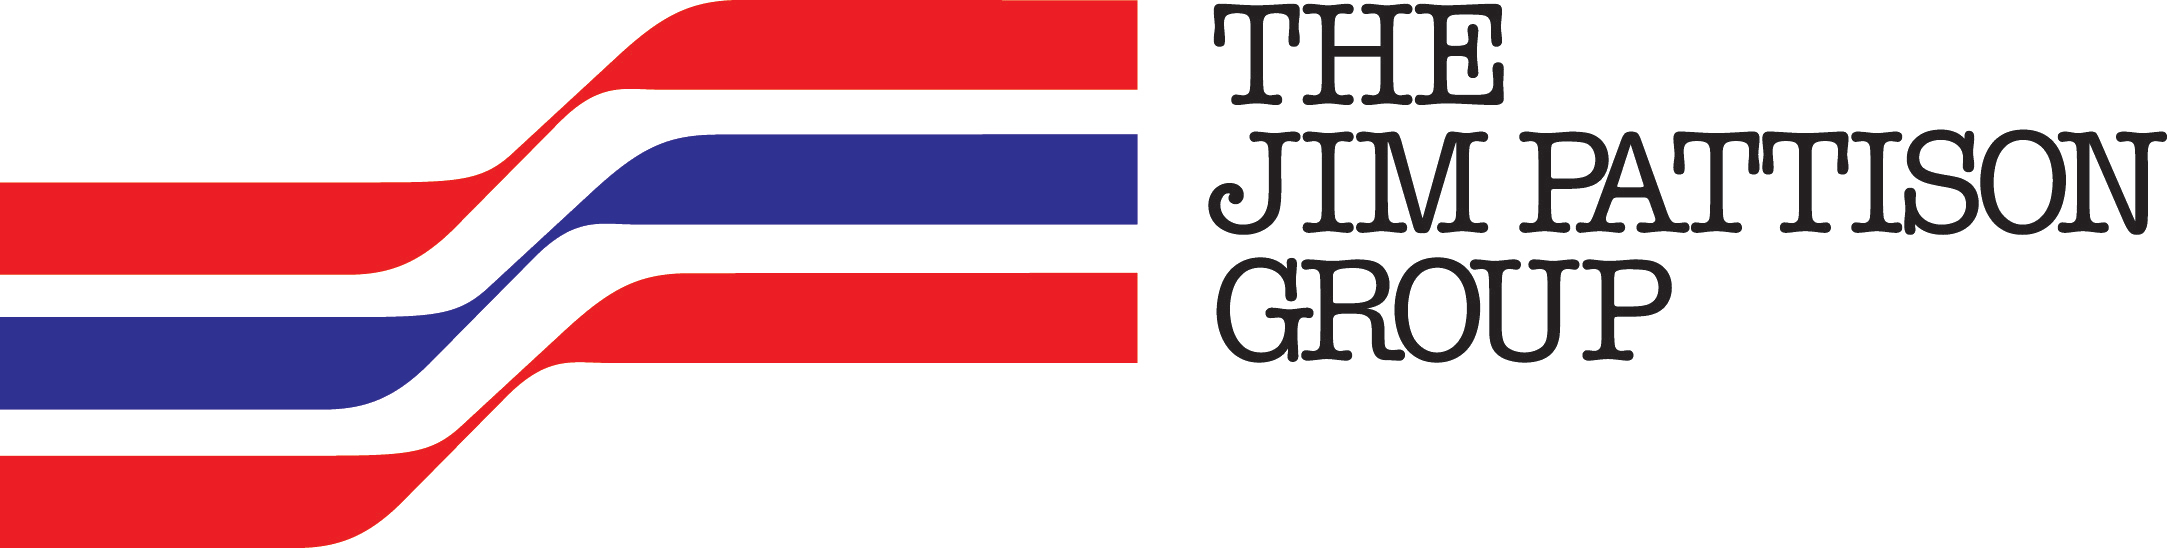 Jim Pattinson group logo